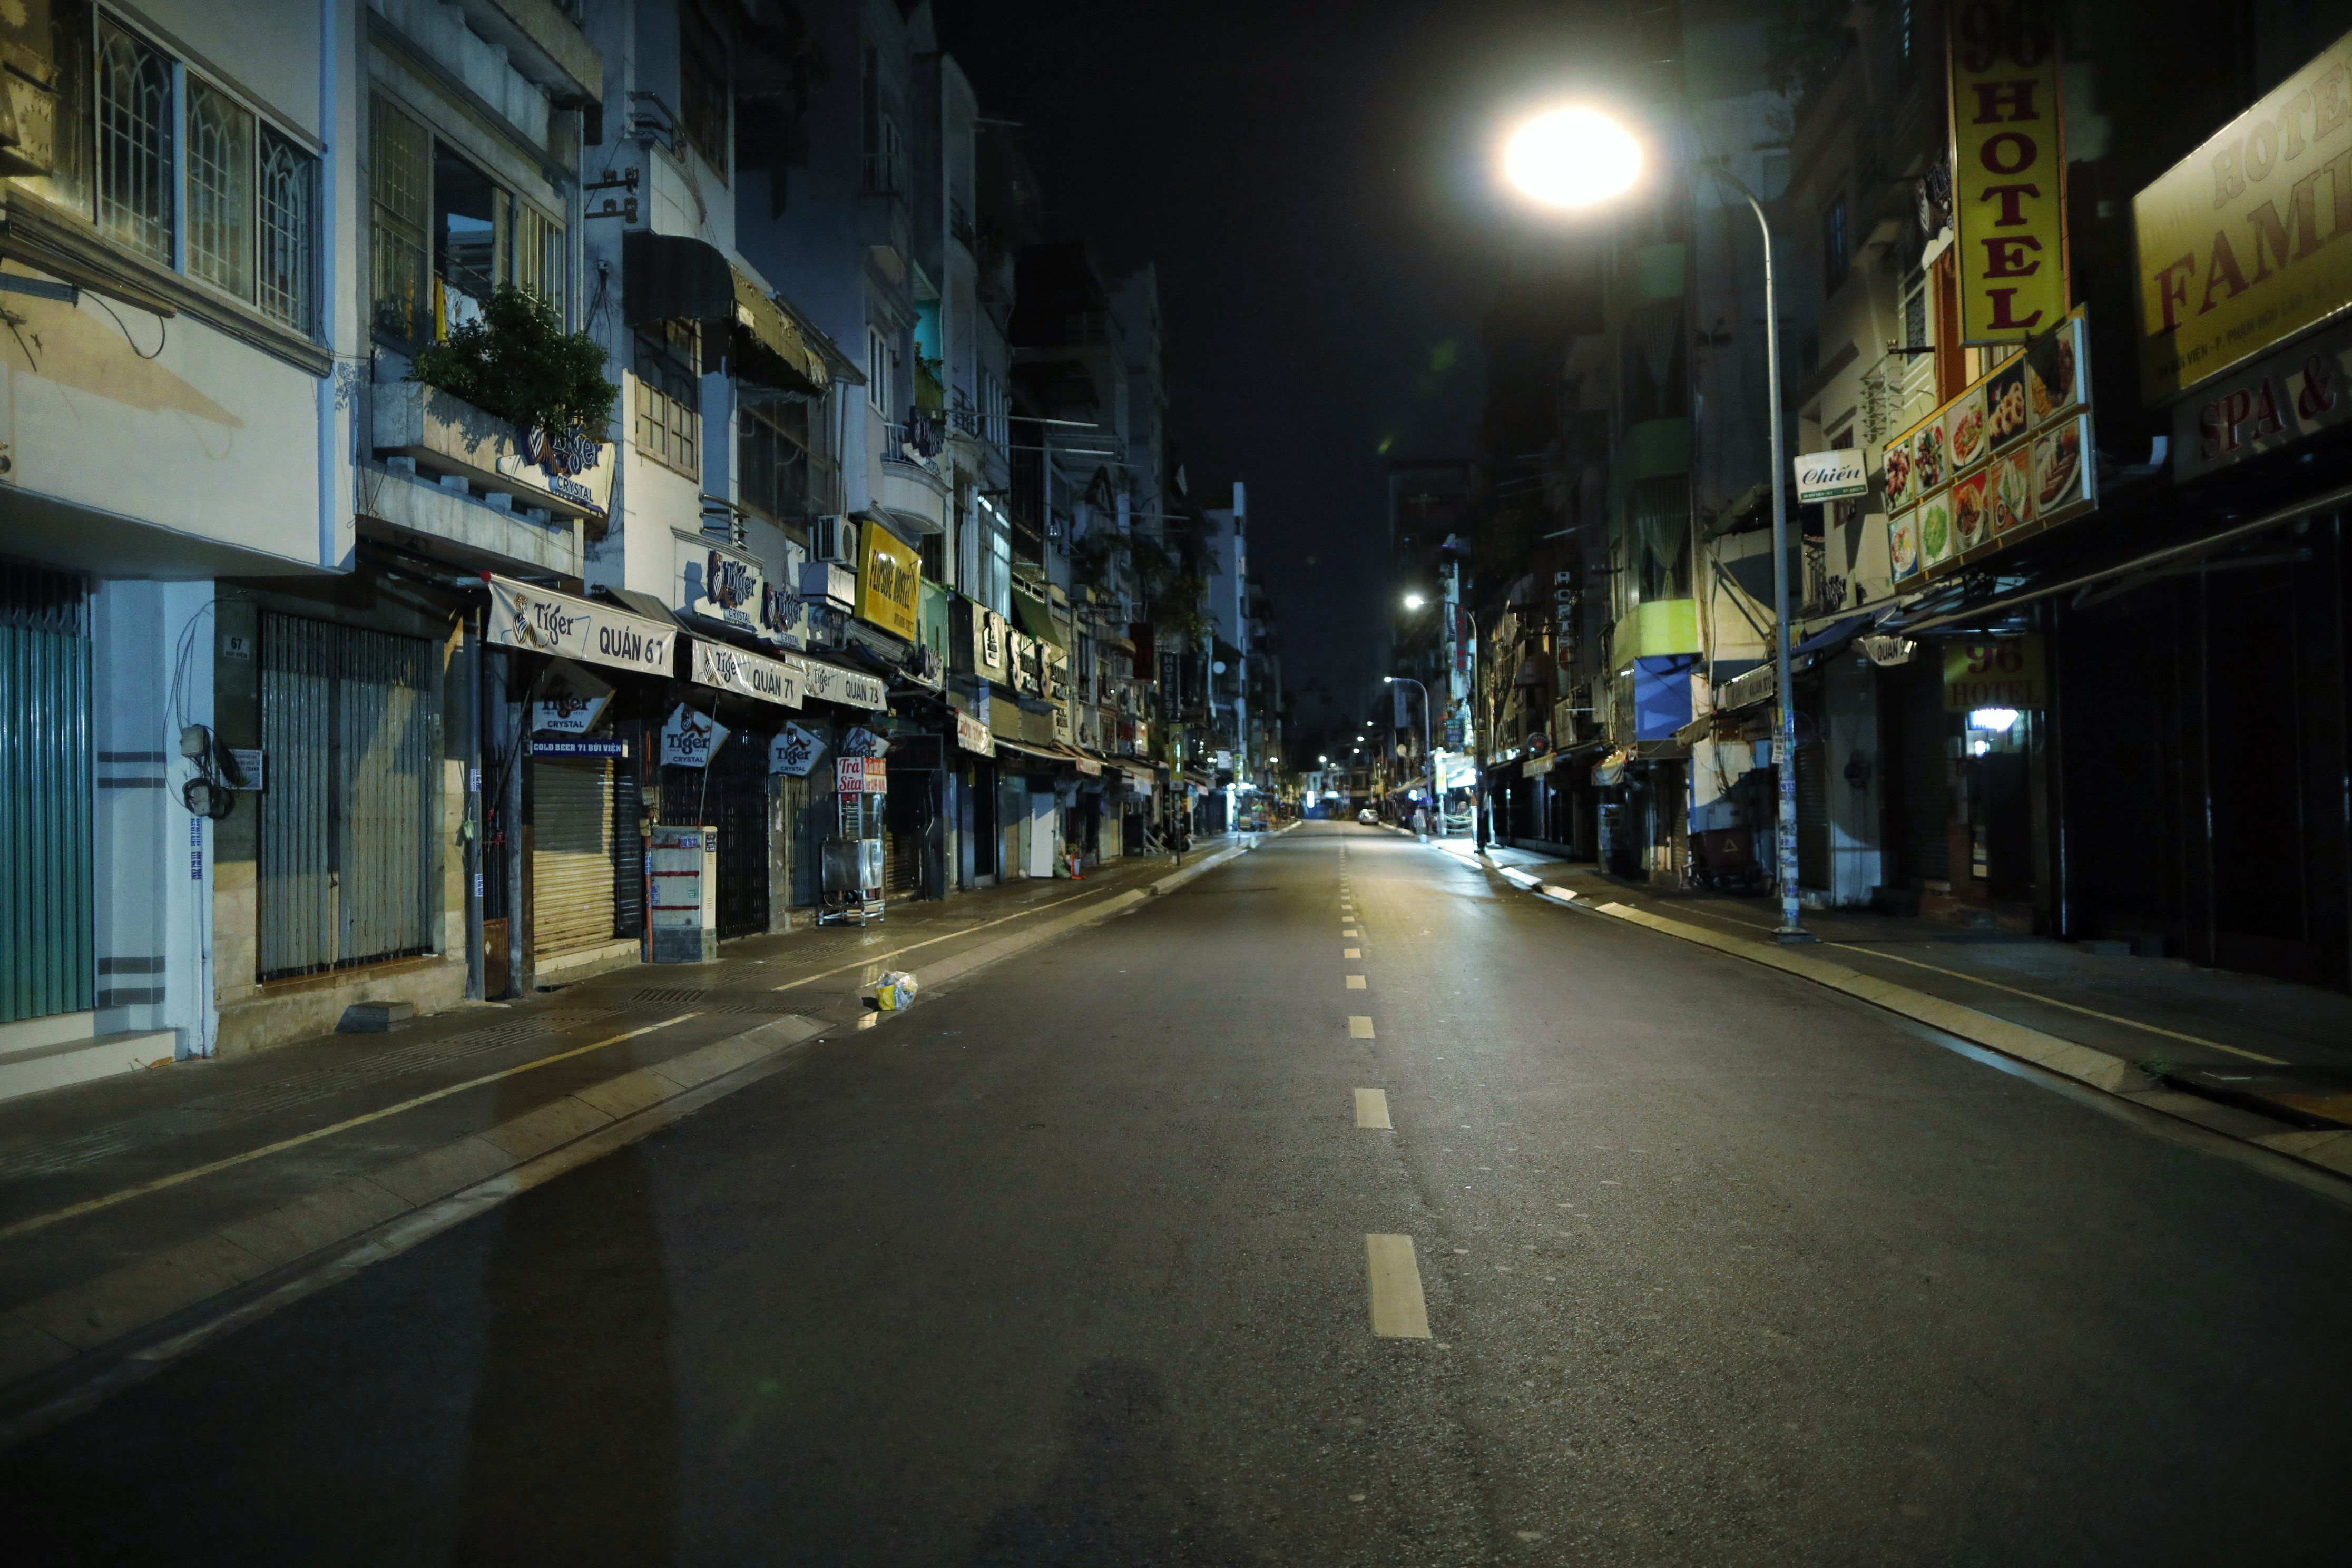 Không gì tuyệt vời hơn là ngồi bên nhau trong đêm đầu tiên, nghe tiếng nhạc nhẹ và cảm nhận không khí lãng mạn của đêm trên phố Sài Gòn. Hãy cùng xem những hình ảnh đầy lãng mạn trên những nẻo đường Sài Gòn nhộn nhịp để tận hưởng trọn vẹn khoảnh khắc này!